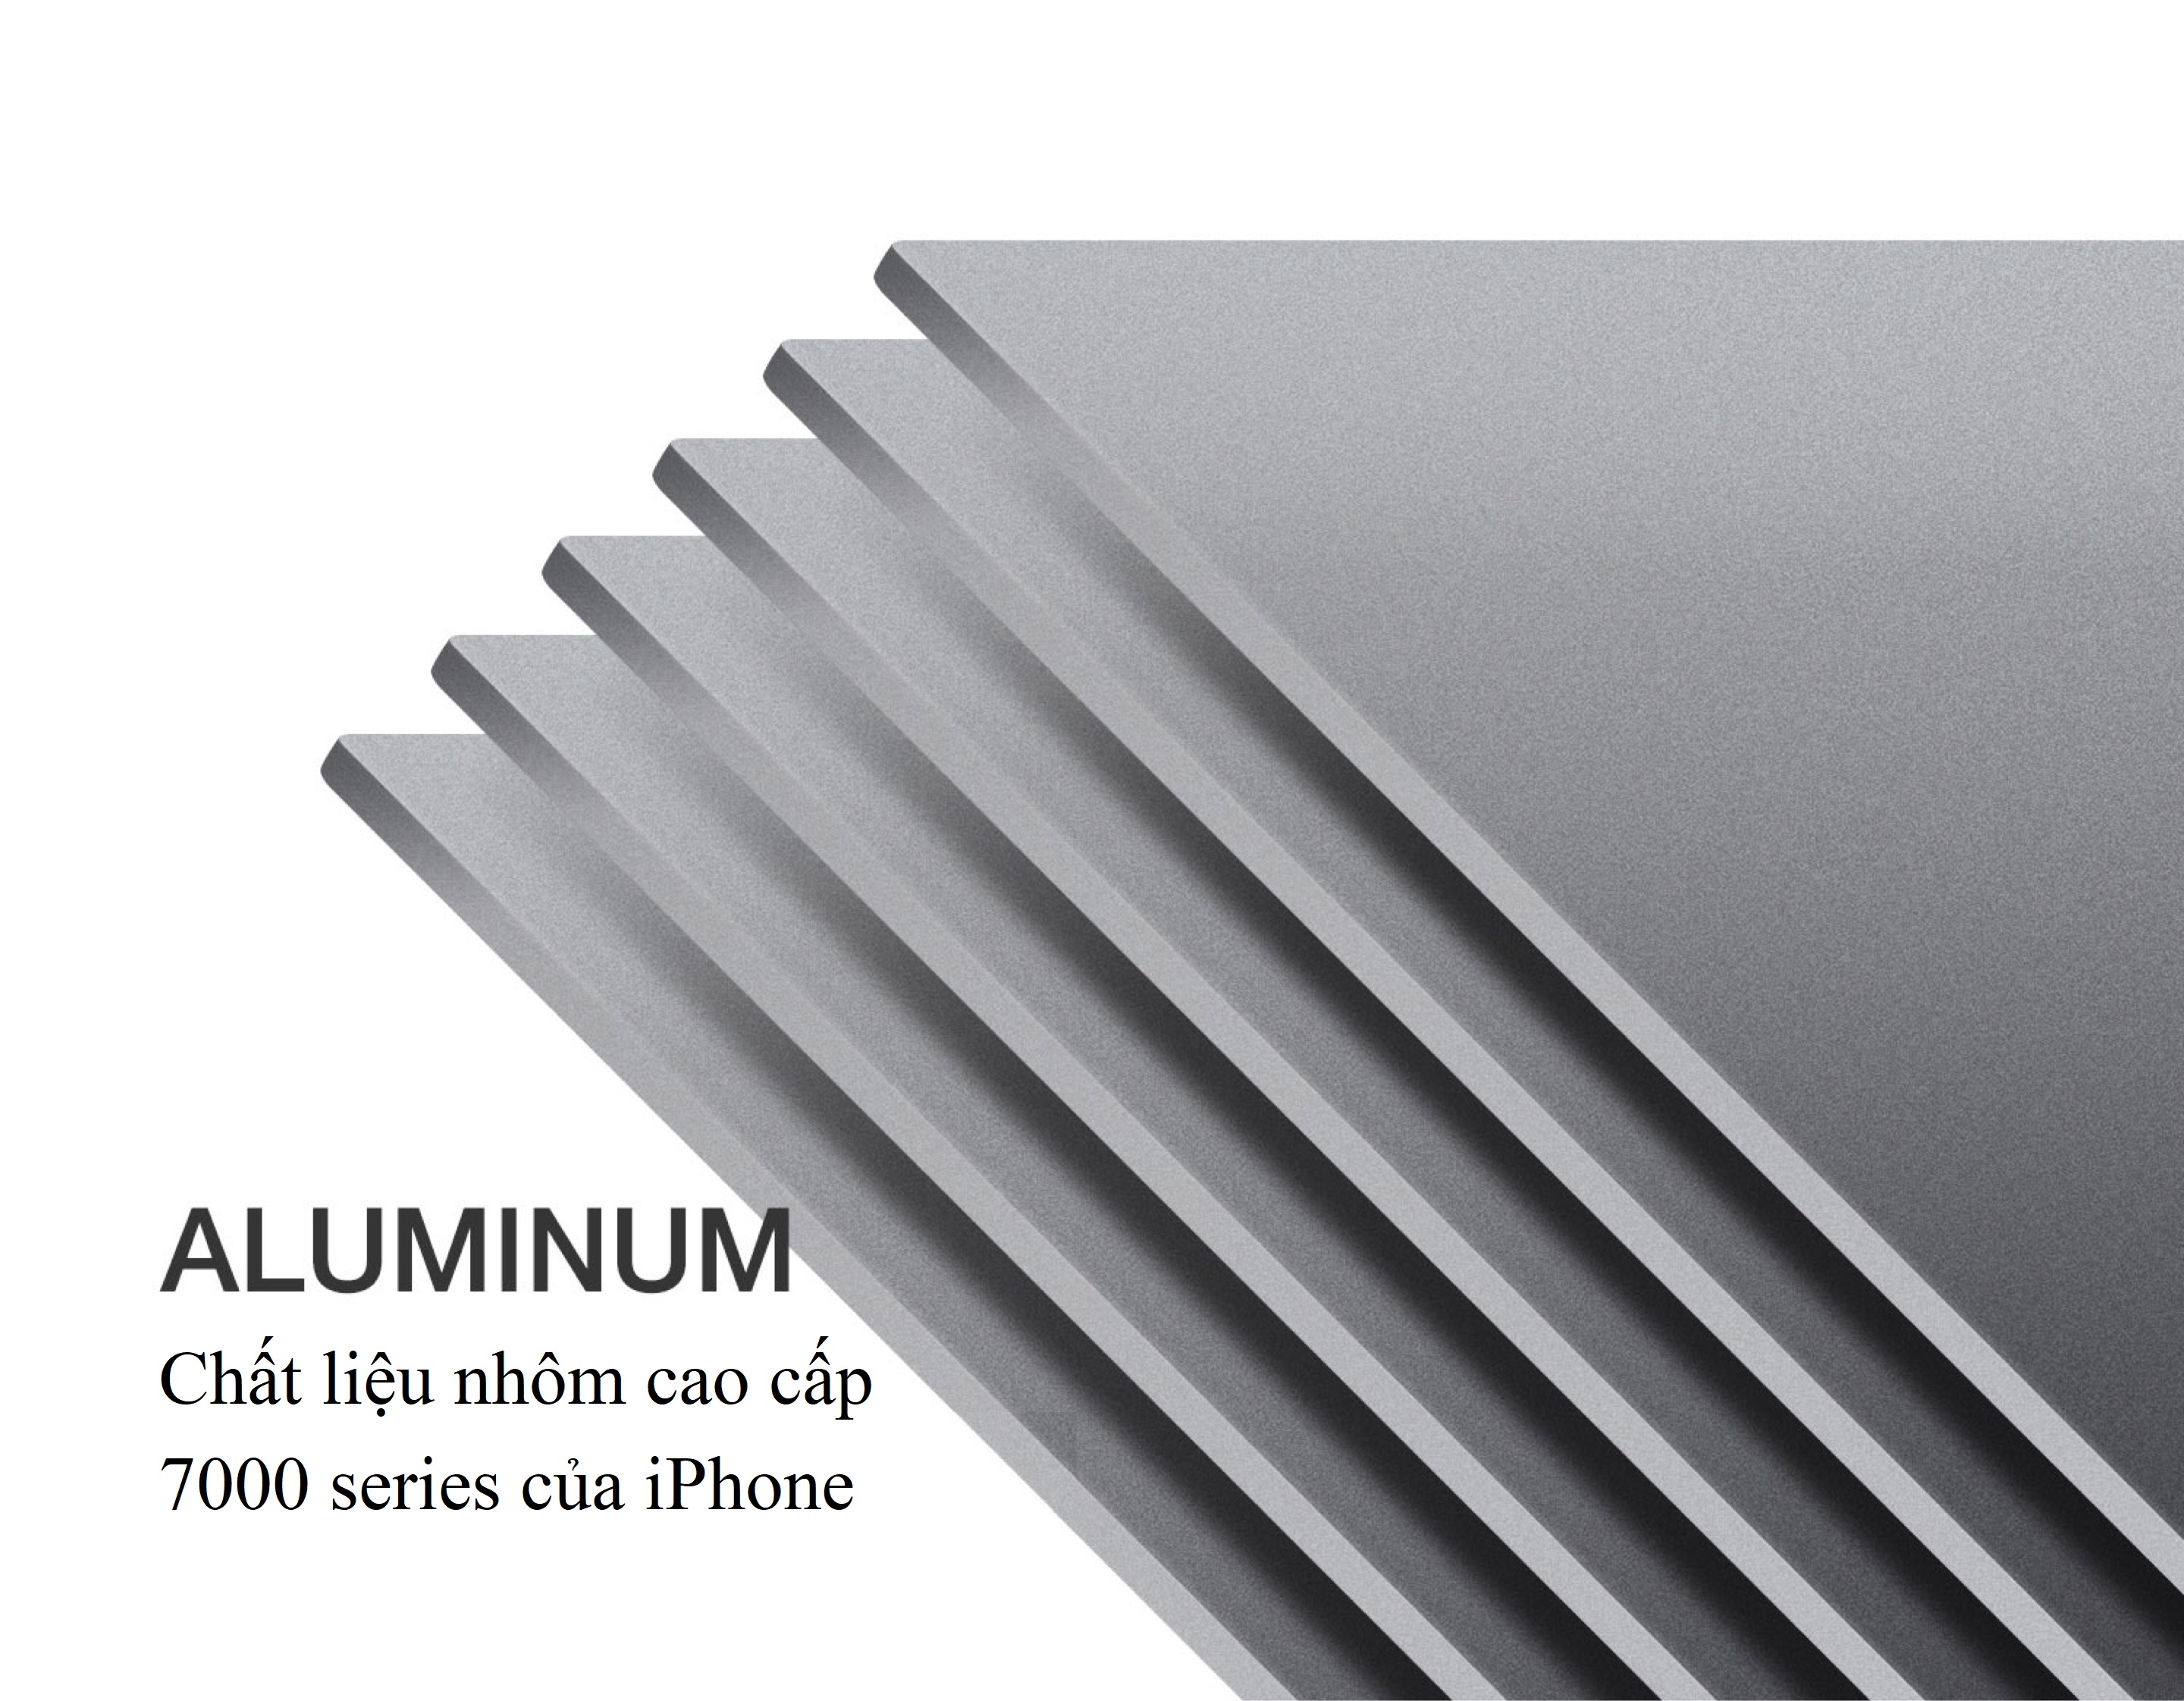 Đế nâng tản nhiệt hợp kim nhôm nguyên khối cho laptop Macbook Vu Studio - Hàng chính hãng 5